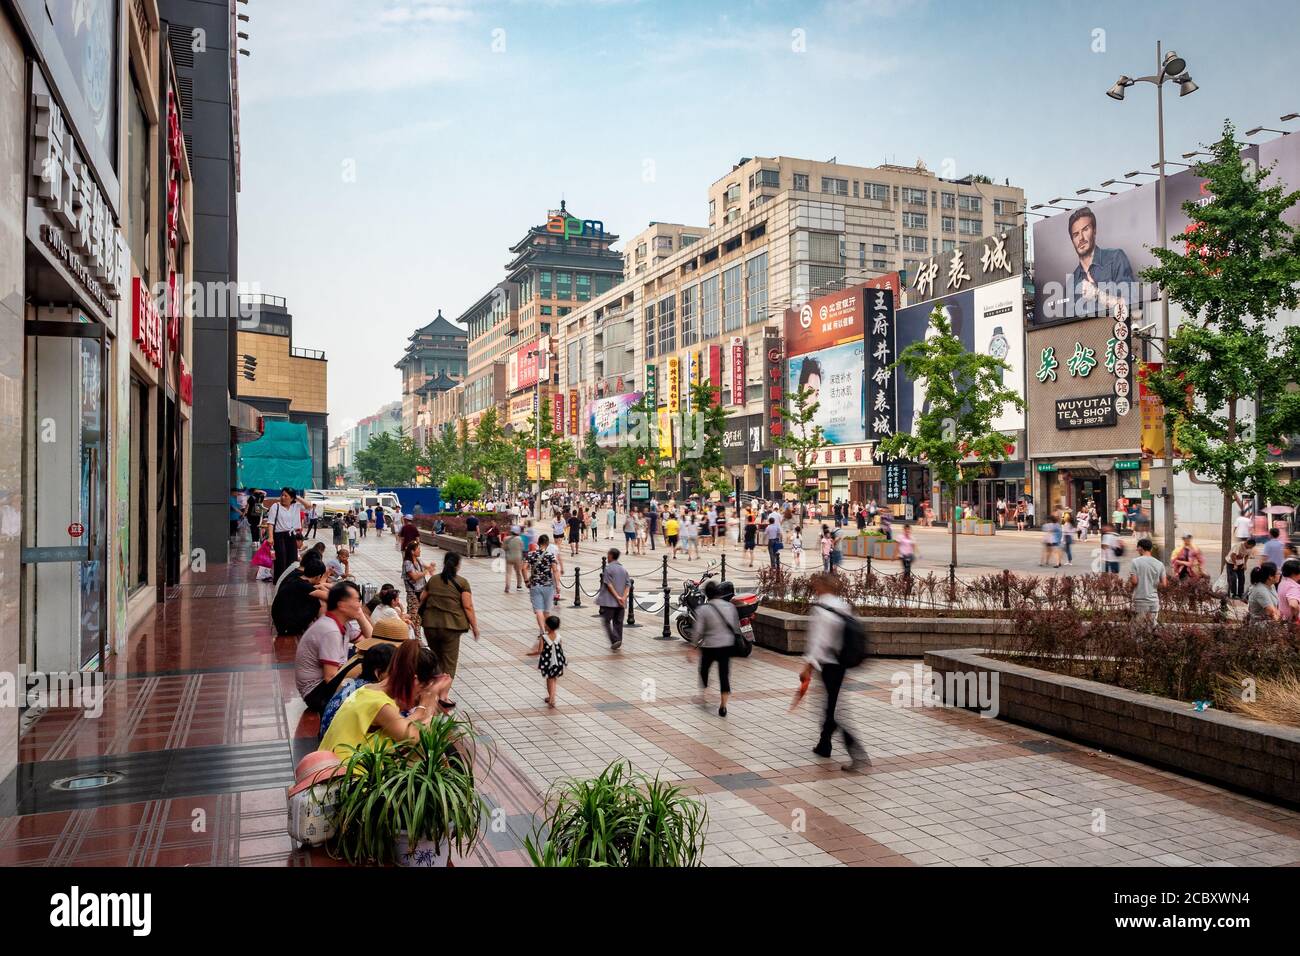 Les amateurs de shopping se trouvent dans la rue Walking de Wangfujing, la rue commerçante la plus connue et la plus prospère de Pékin, capitale de la Chine. Banque D'Images